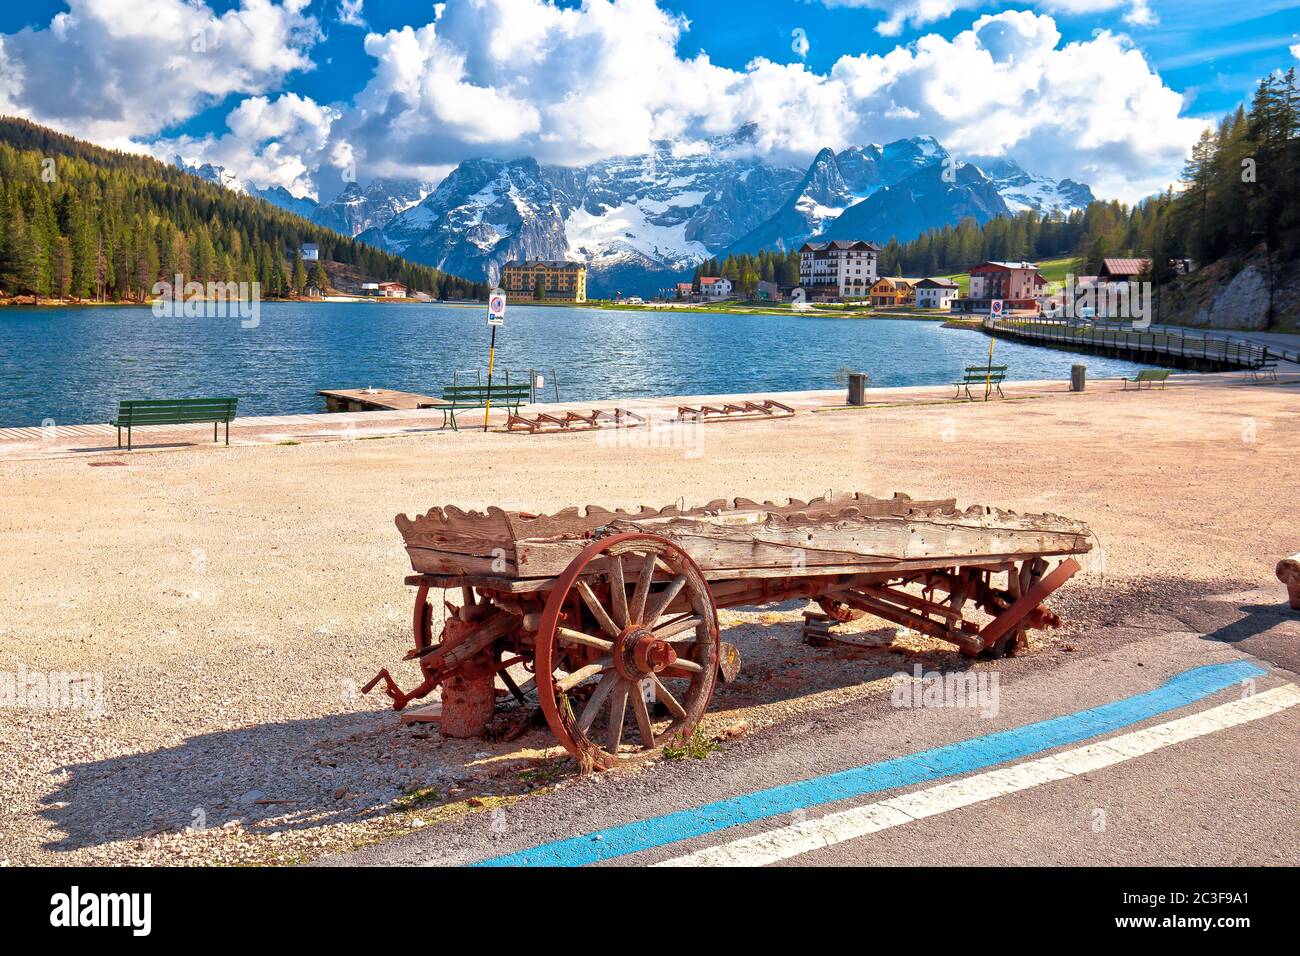 Lake Misurina in Dolomiti Alps alpine landscape view Stock Photo